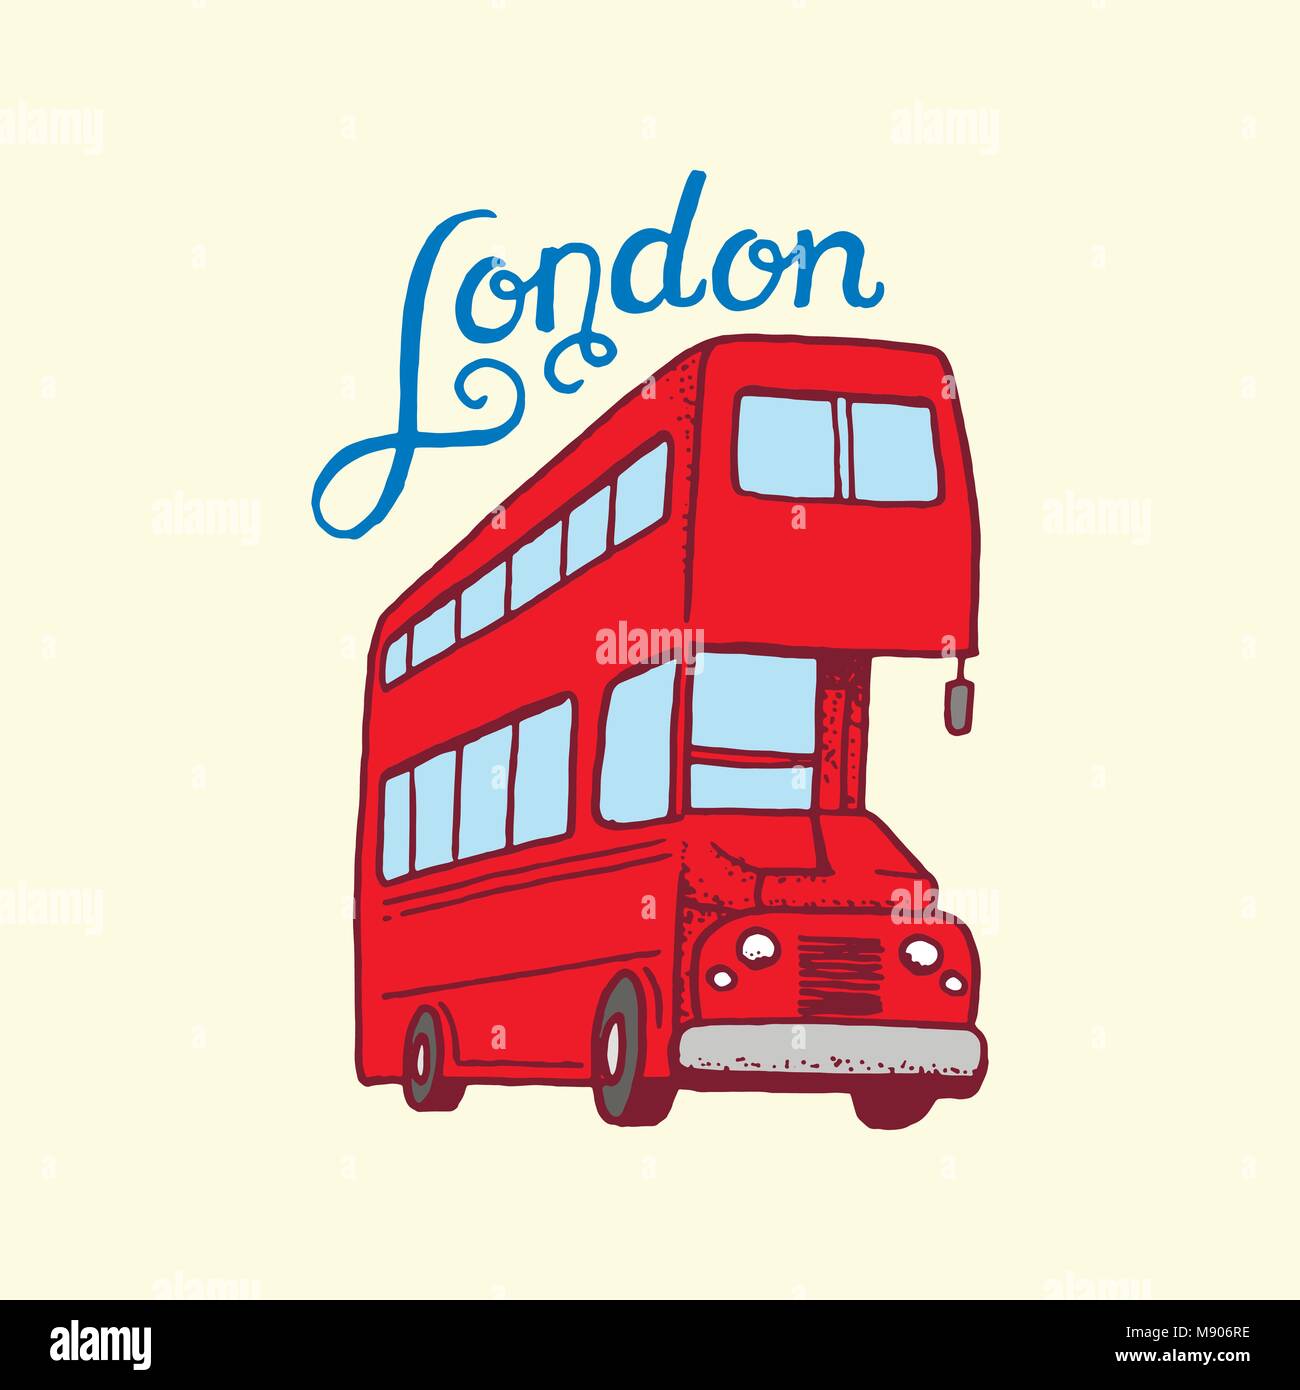 British, bus à Londres et les messieurs. symboles, insignes ou emblèmes, timbres ou architecture culture, Royaume-Uni. Pays Angleterre label. Illustration de Vecteur